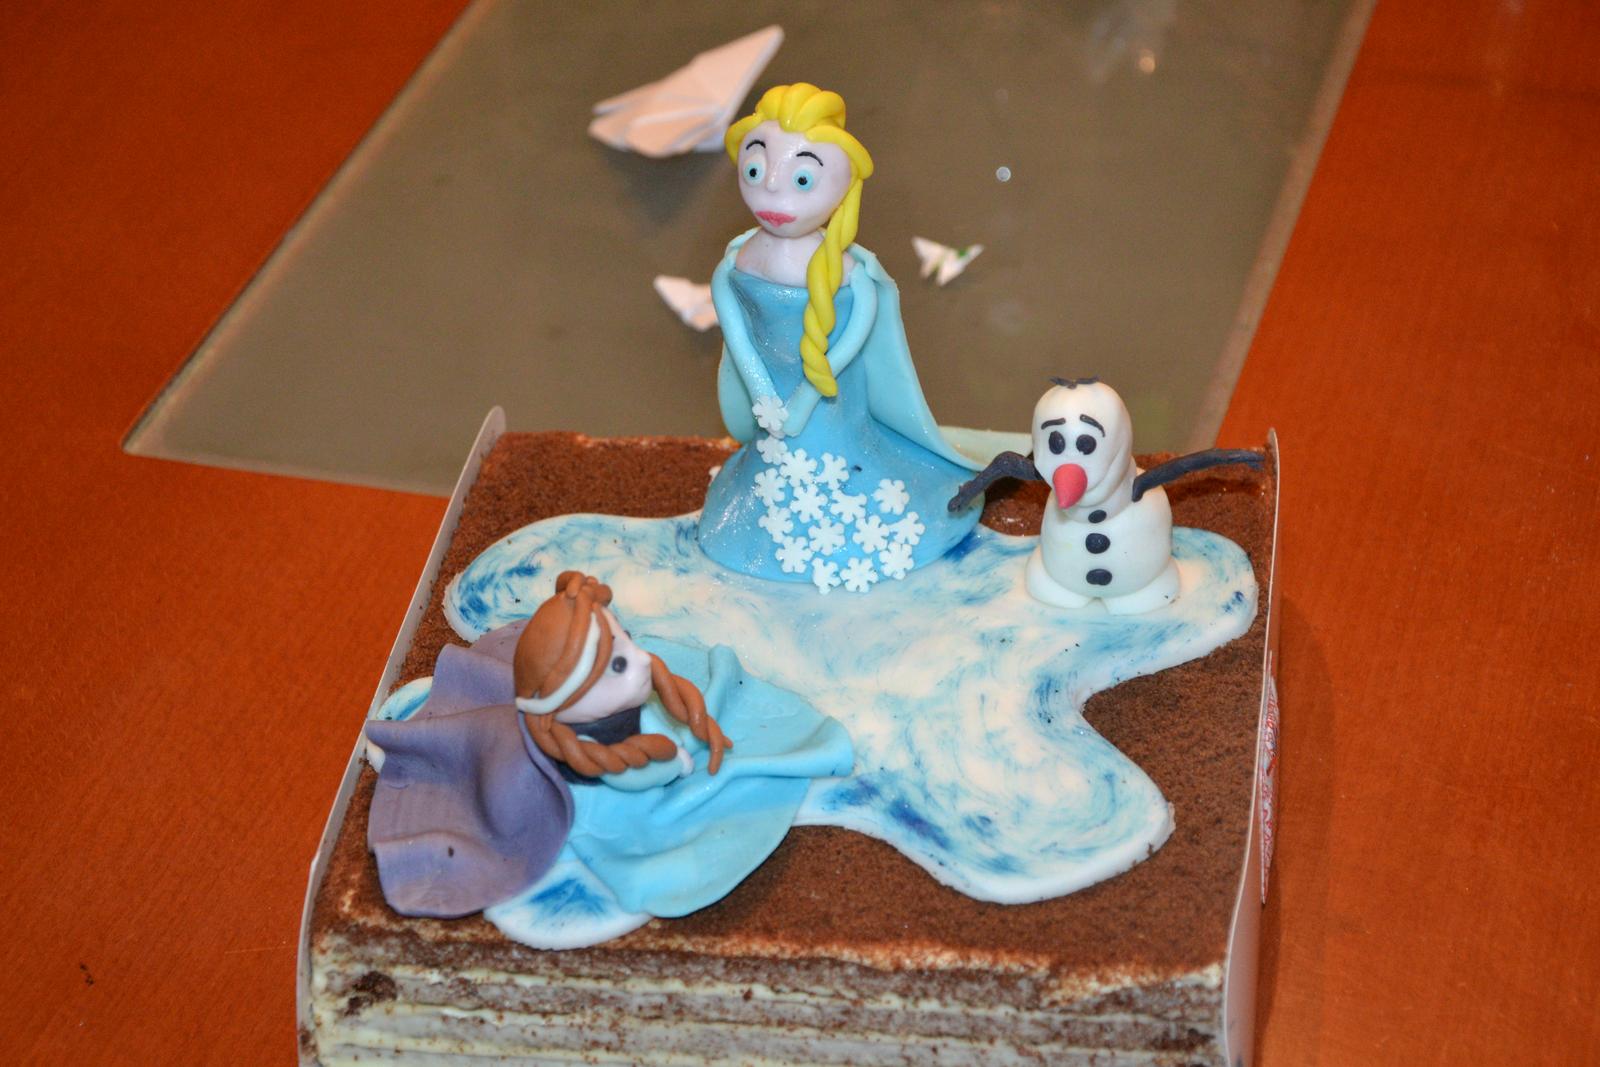 Moje kuchařské výtvory :-)) hlavně dortíky - tady jsem dělala pouze dekorace na koupený medovník -Frozen